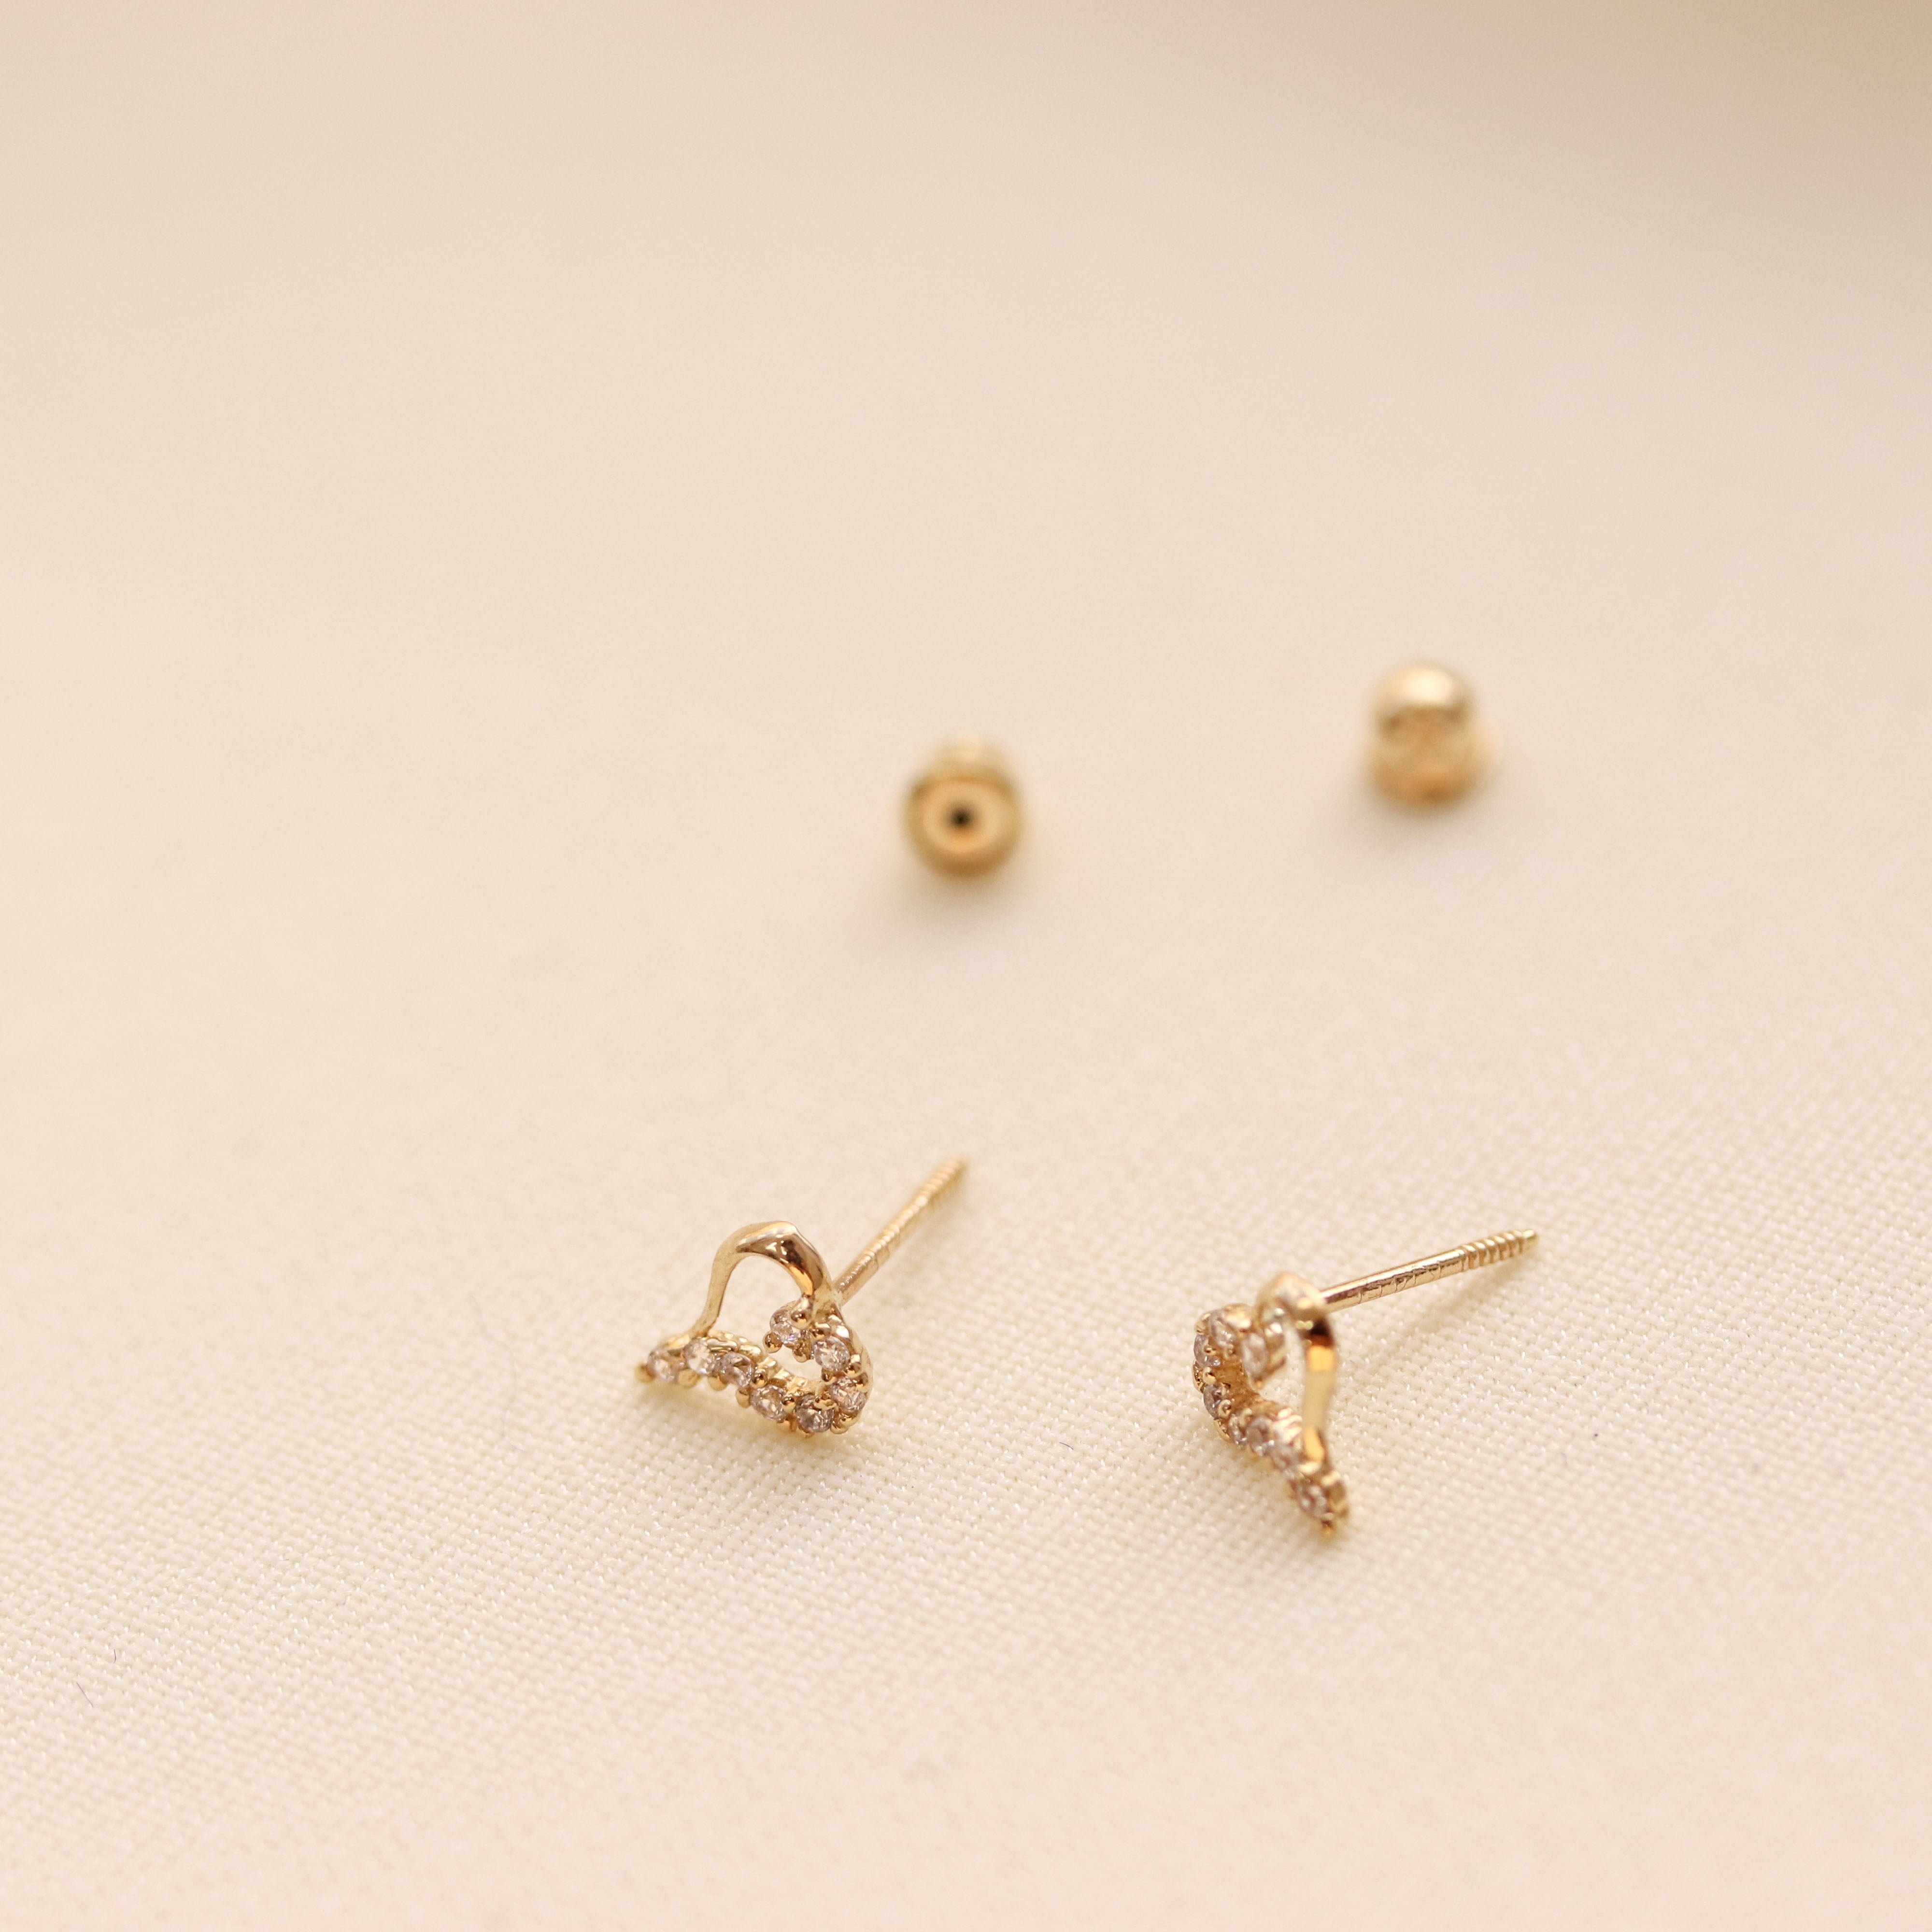 Daily wear gold earrings designs lightweight stud earrings ideas 18k small  earrings - YouTube | Gold earrings designs, Designer earrings, Small  earrings